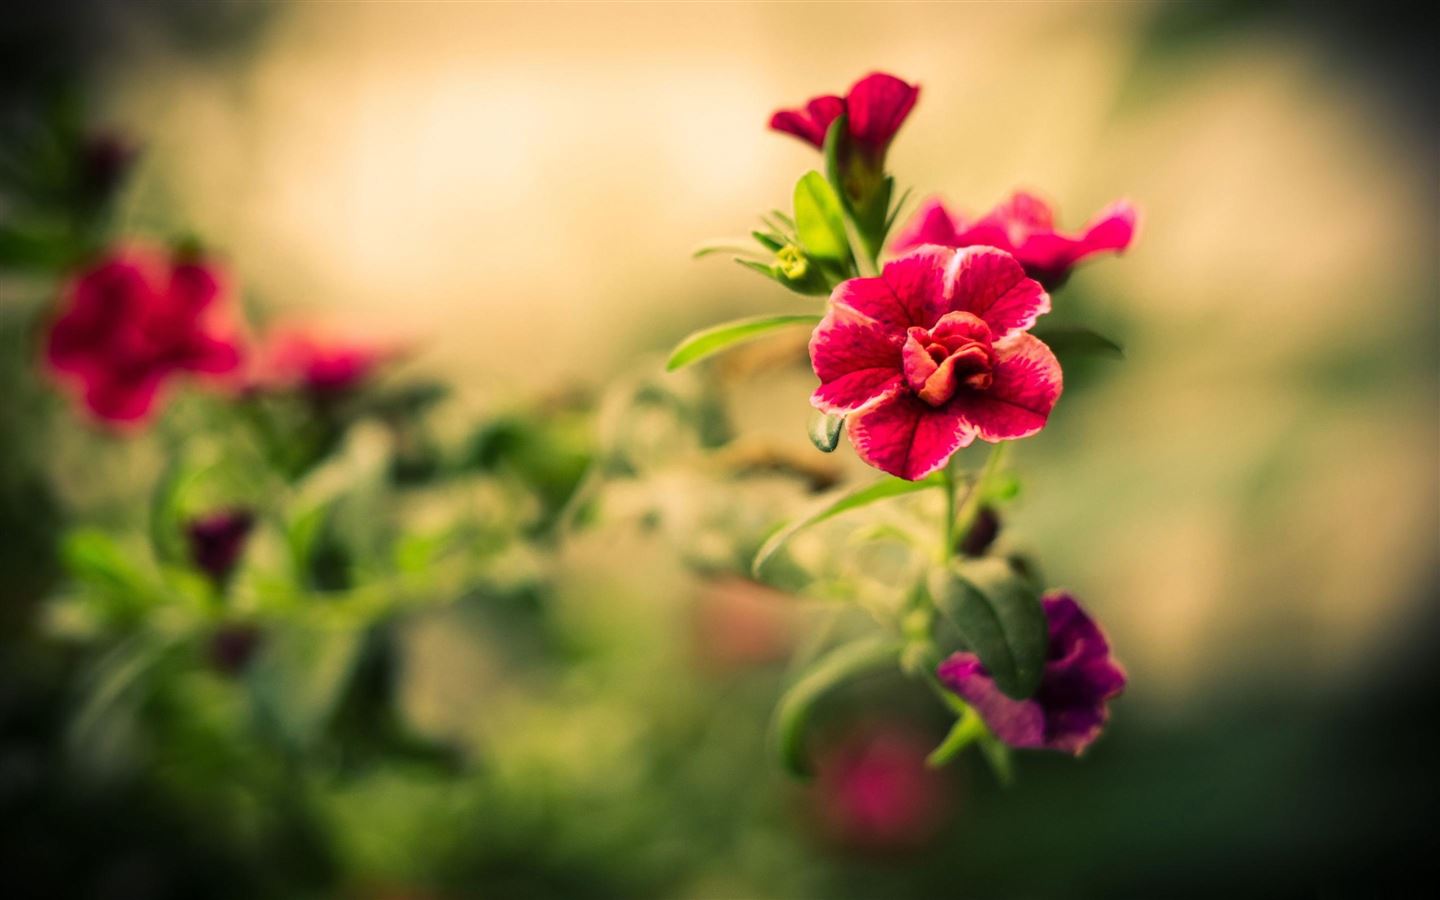 Hoa đỏ mờ là một hình ảnh đầy cảm hứng, cho dù nó có phần mờ mờ ảo ảo. Hãy tưởng tượng về một đóa hoa tươi sáng, mang đến niềm vui và sự tự tin cho người đón nhận. Hãy cảm nhận những sắc đỏ bắt mắt và những nét mờ đẹp như mơ của nó. Điều đó sẽ khiến bạn yêu thích hoa đỏ mờ ngay lập tức.